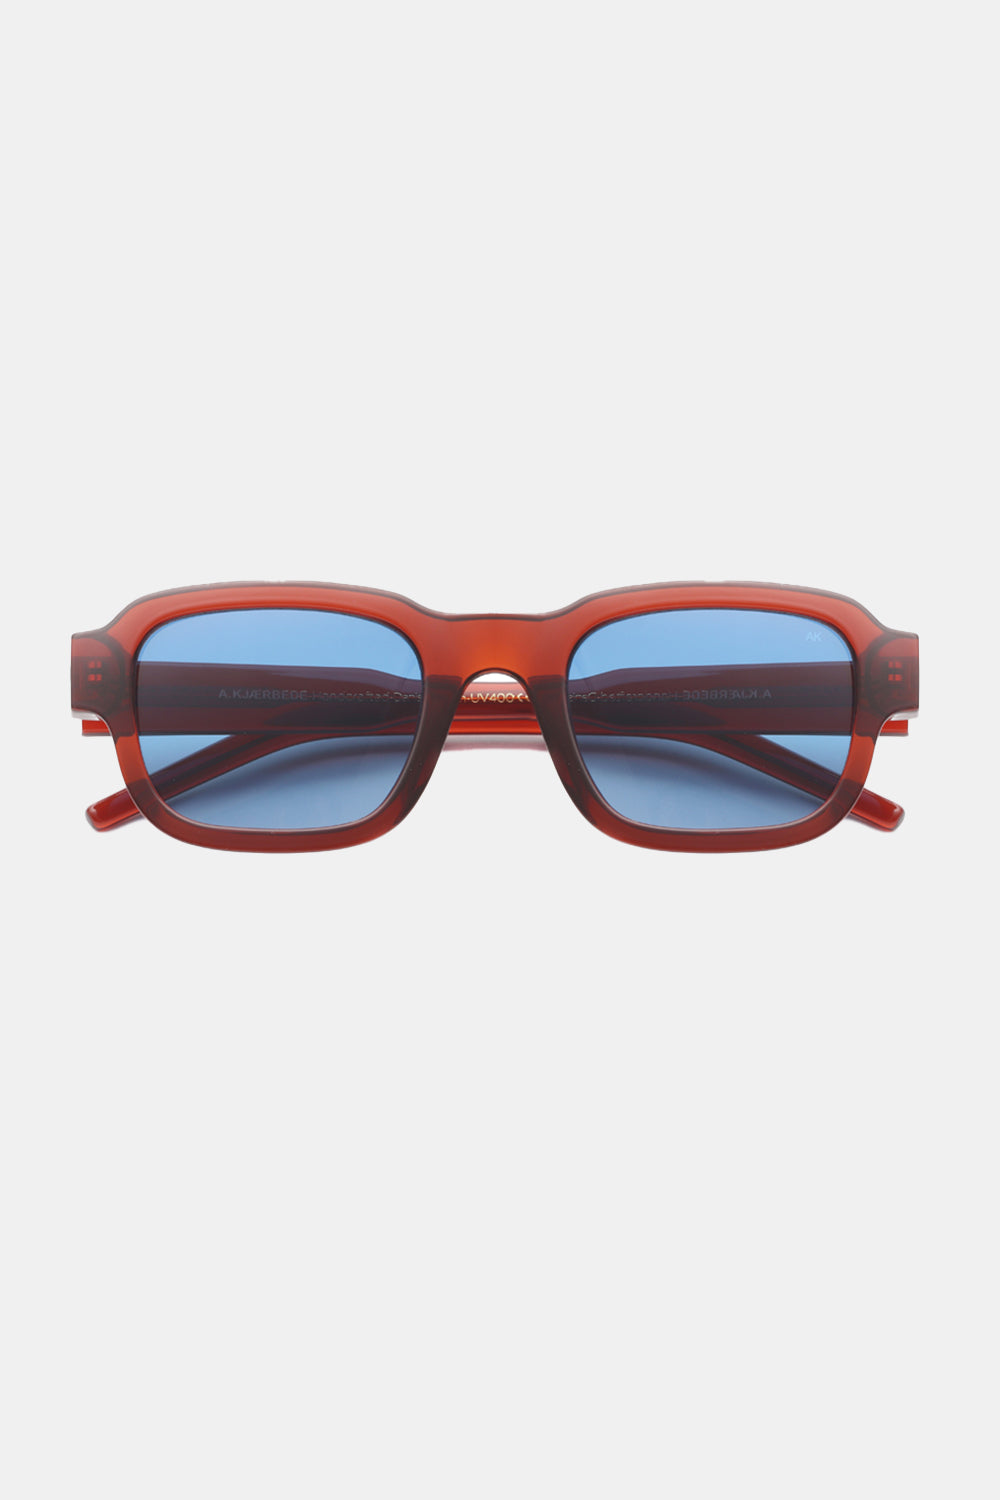 A Kjaerbede Halo Sunglasses (Brown Transparent)